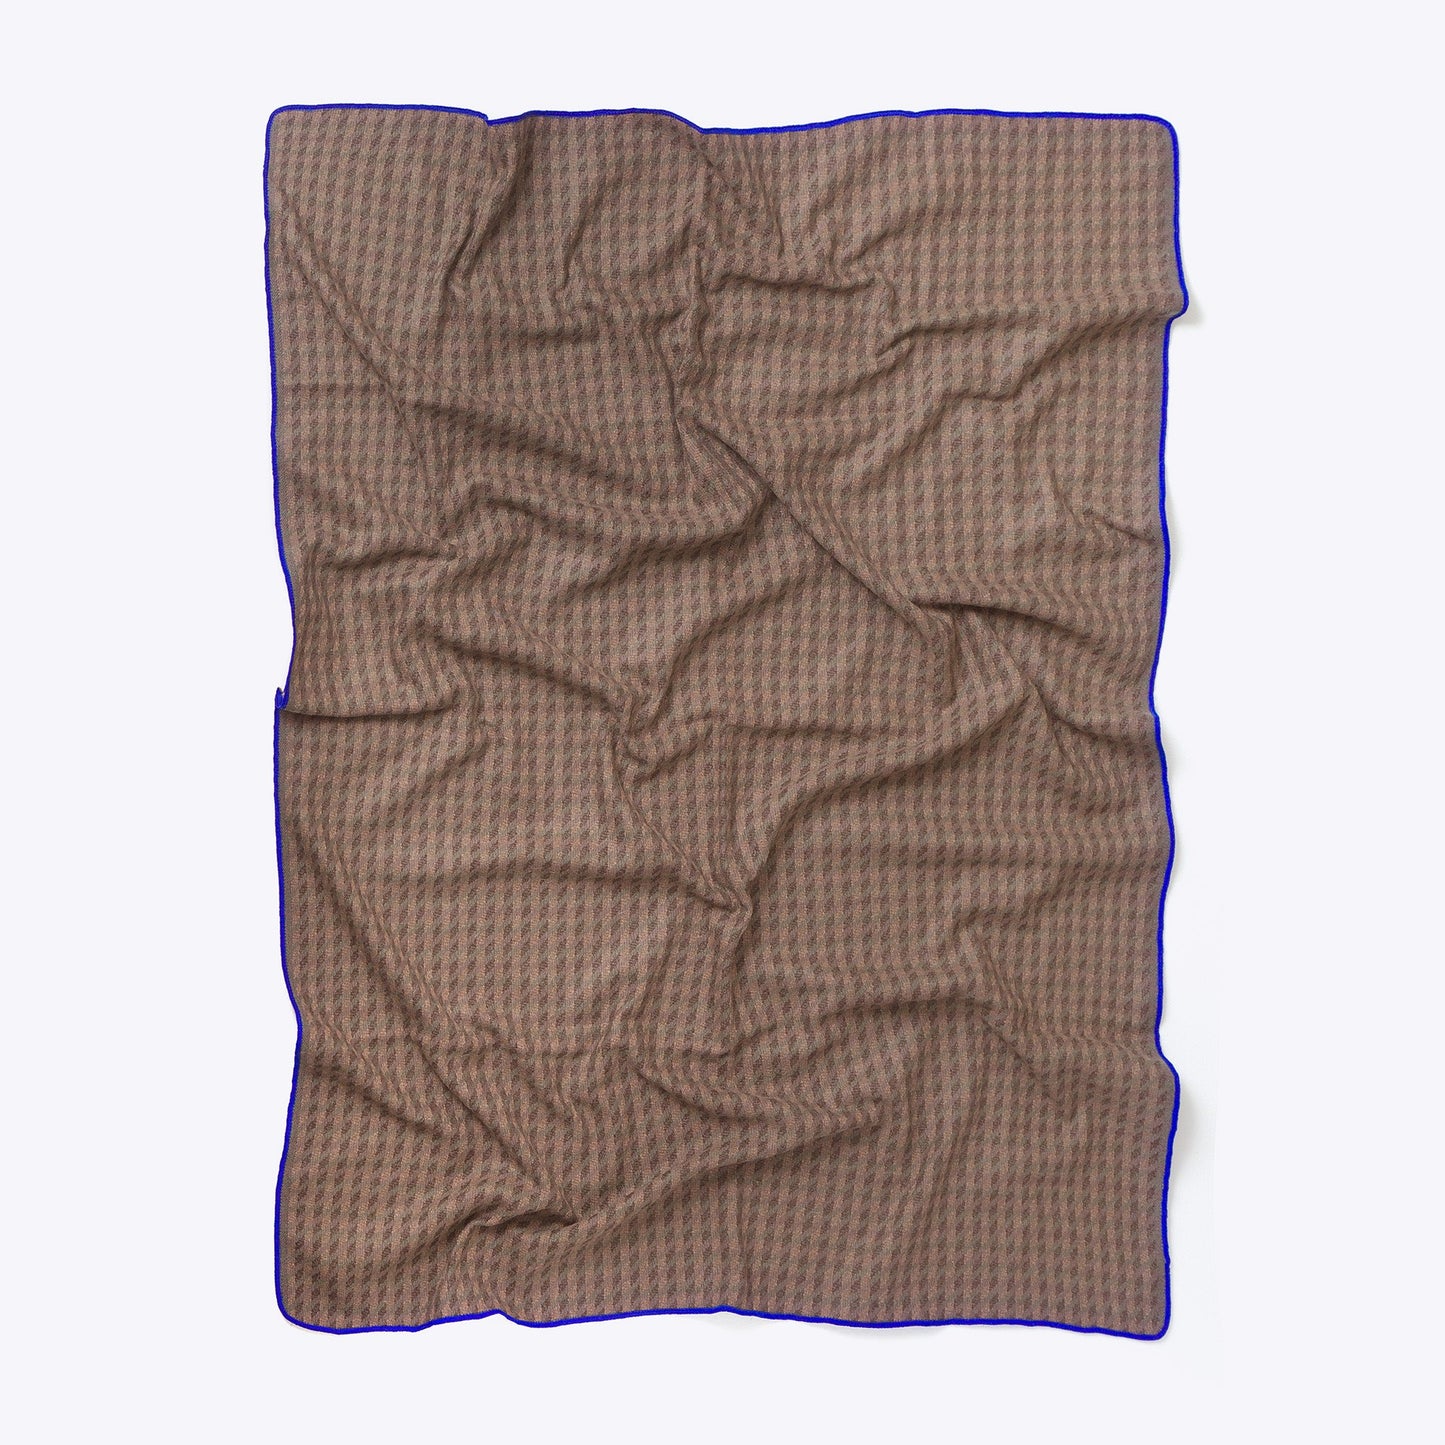 Patterned blanket